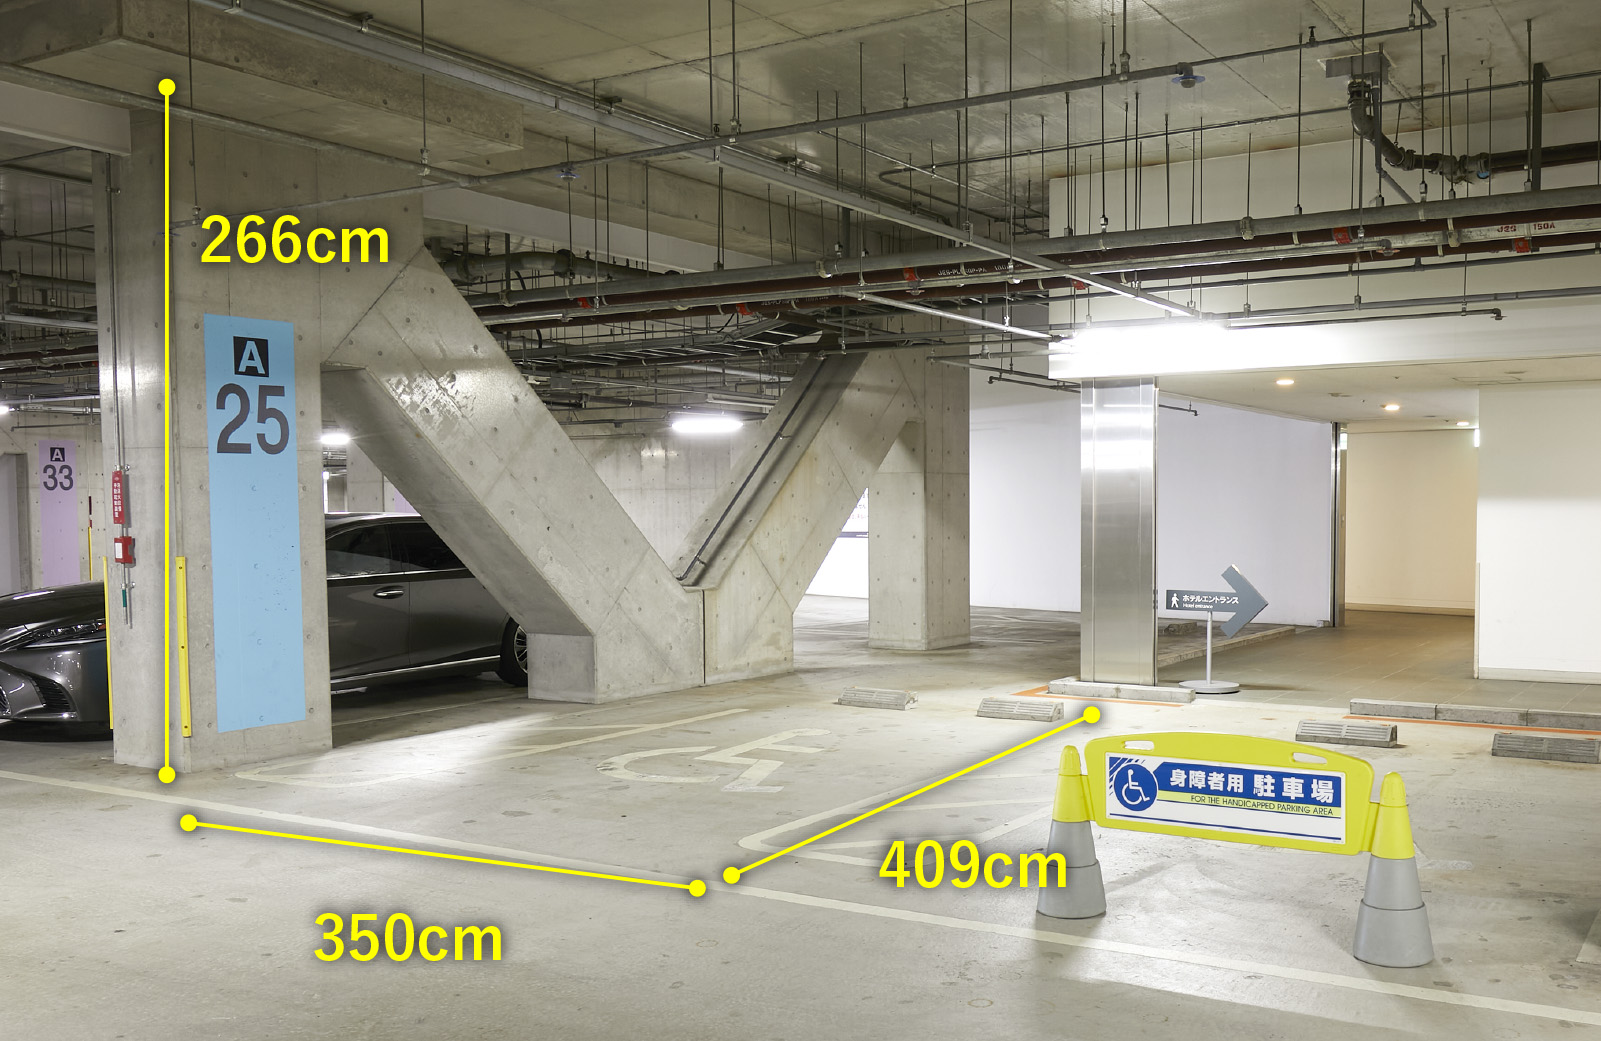 駐車場サイズ　横幅350センチメートル　奥行409センチメートル　高さ266センチメートル